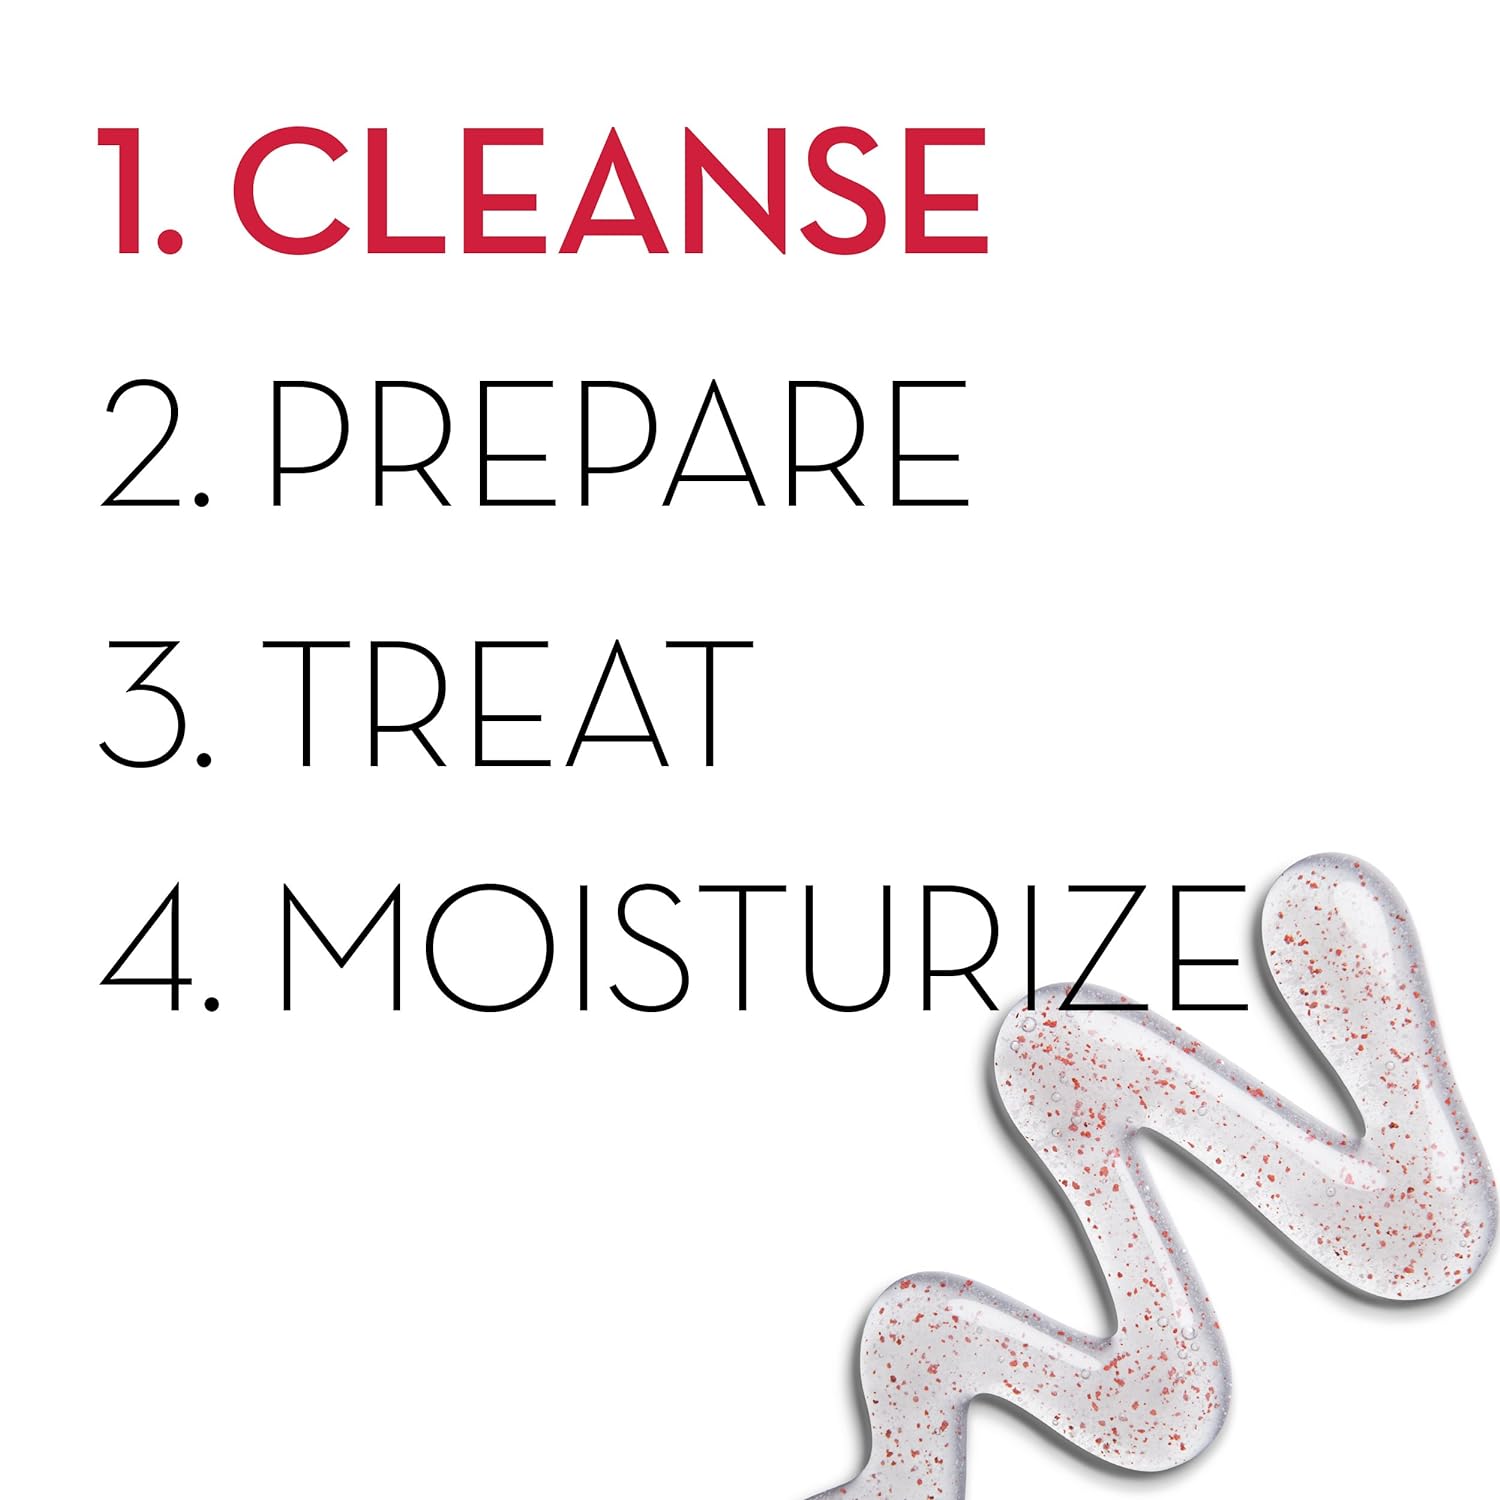 Esupli.com Olay Regenerist Detoxifying Pore Scrub Facial Cleanser, 5.0 